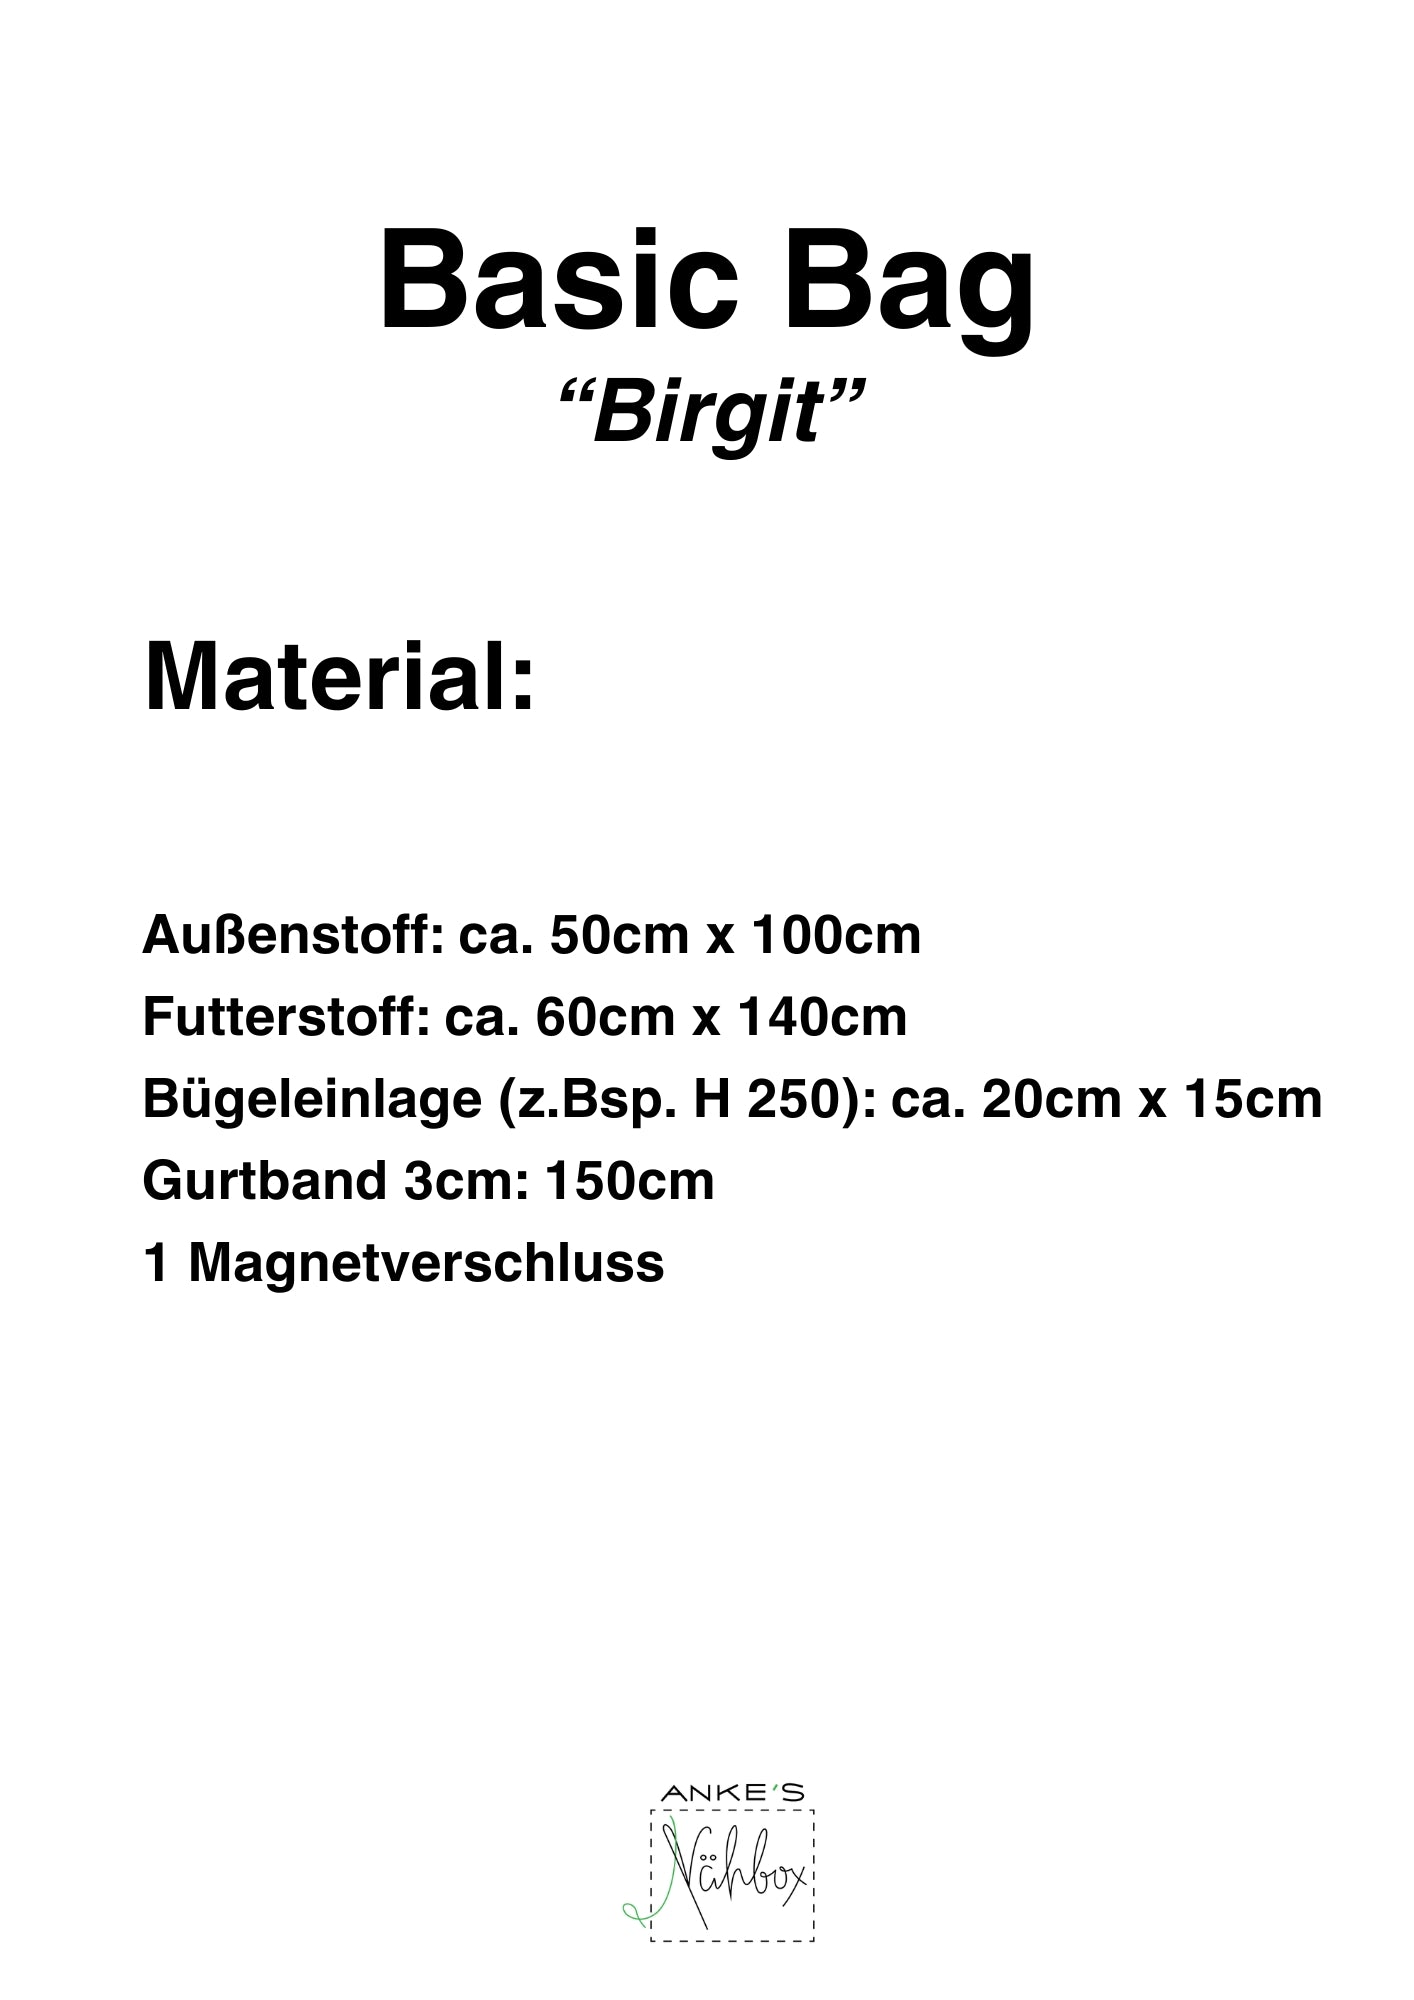 Papierschnittmuster Basic Bag "Birgit"